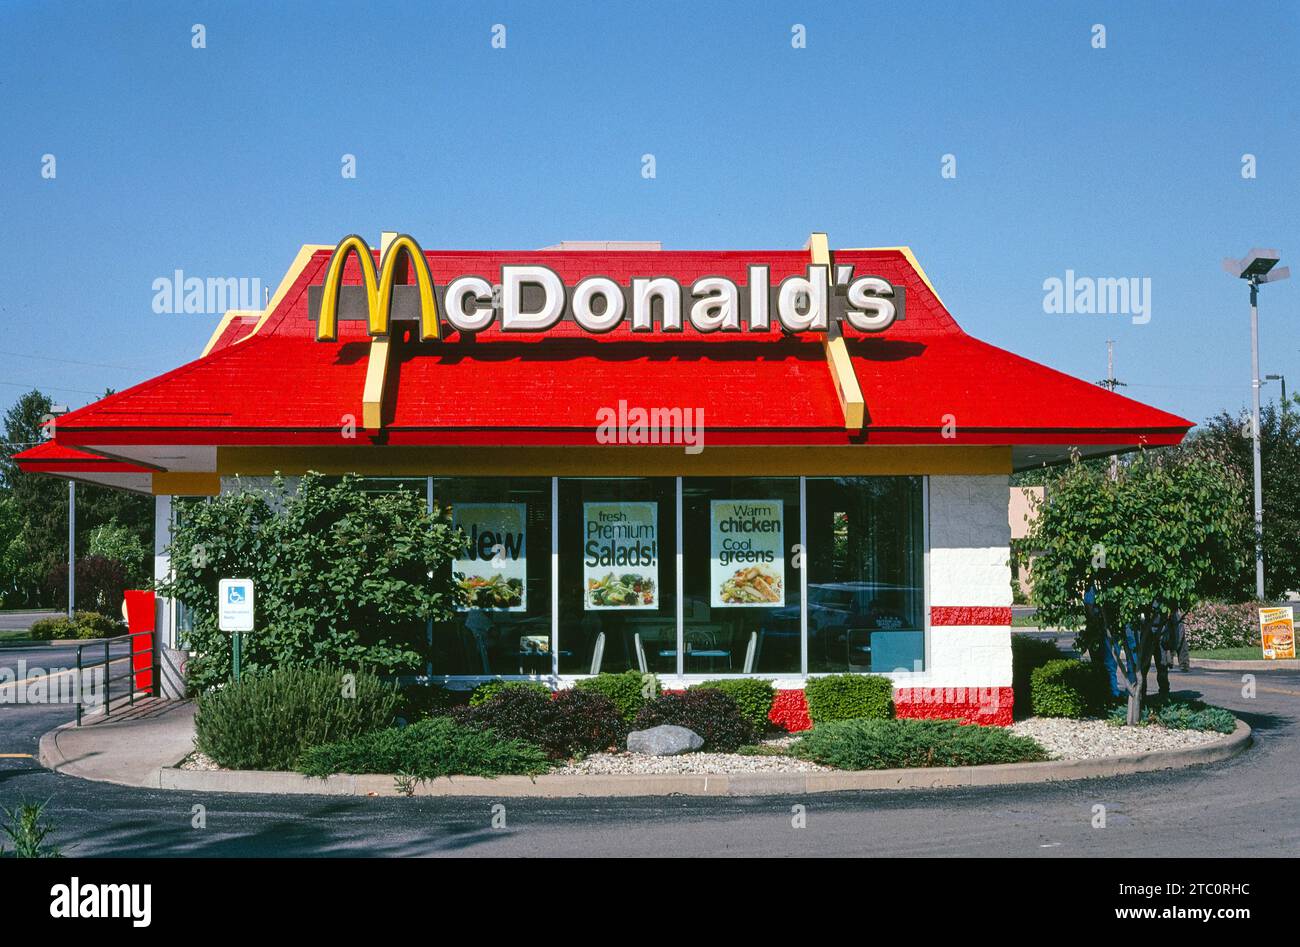 Restaurant de restauration rapide McDonald's, Spring Valley, Illinois, États-Unis, John Margolies Roadside America Photograph Archive, 2003 Banque D'Images